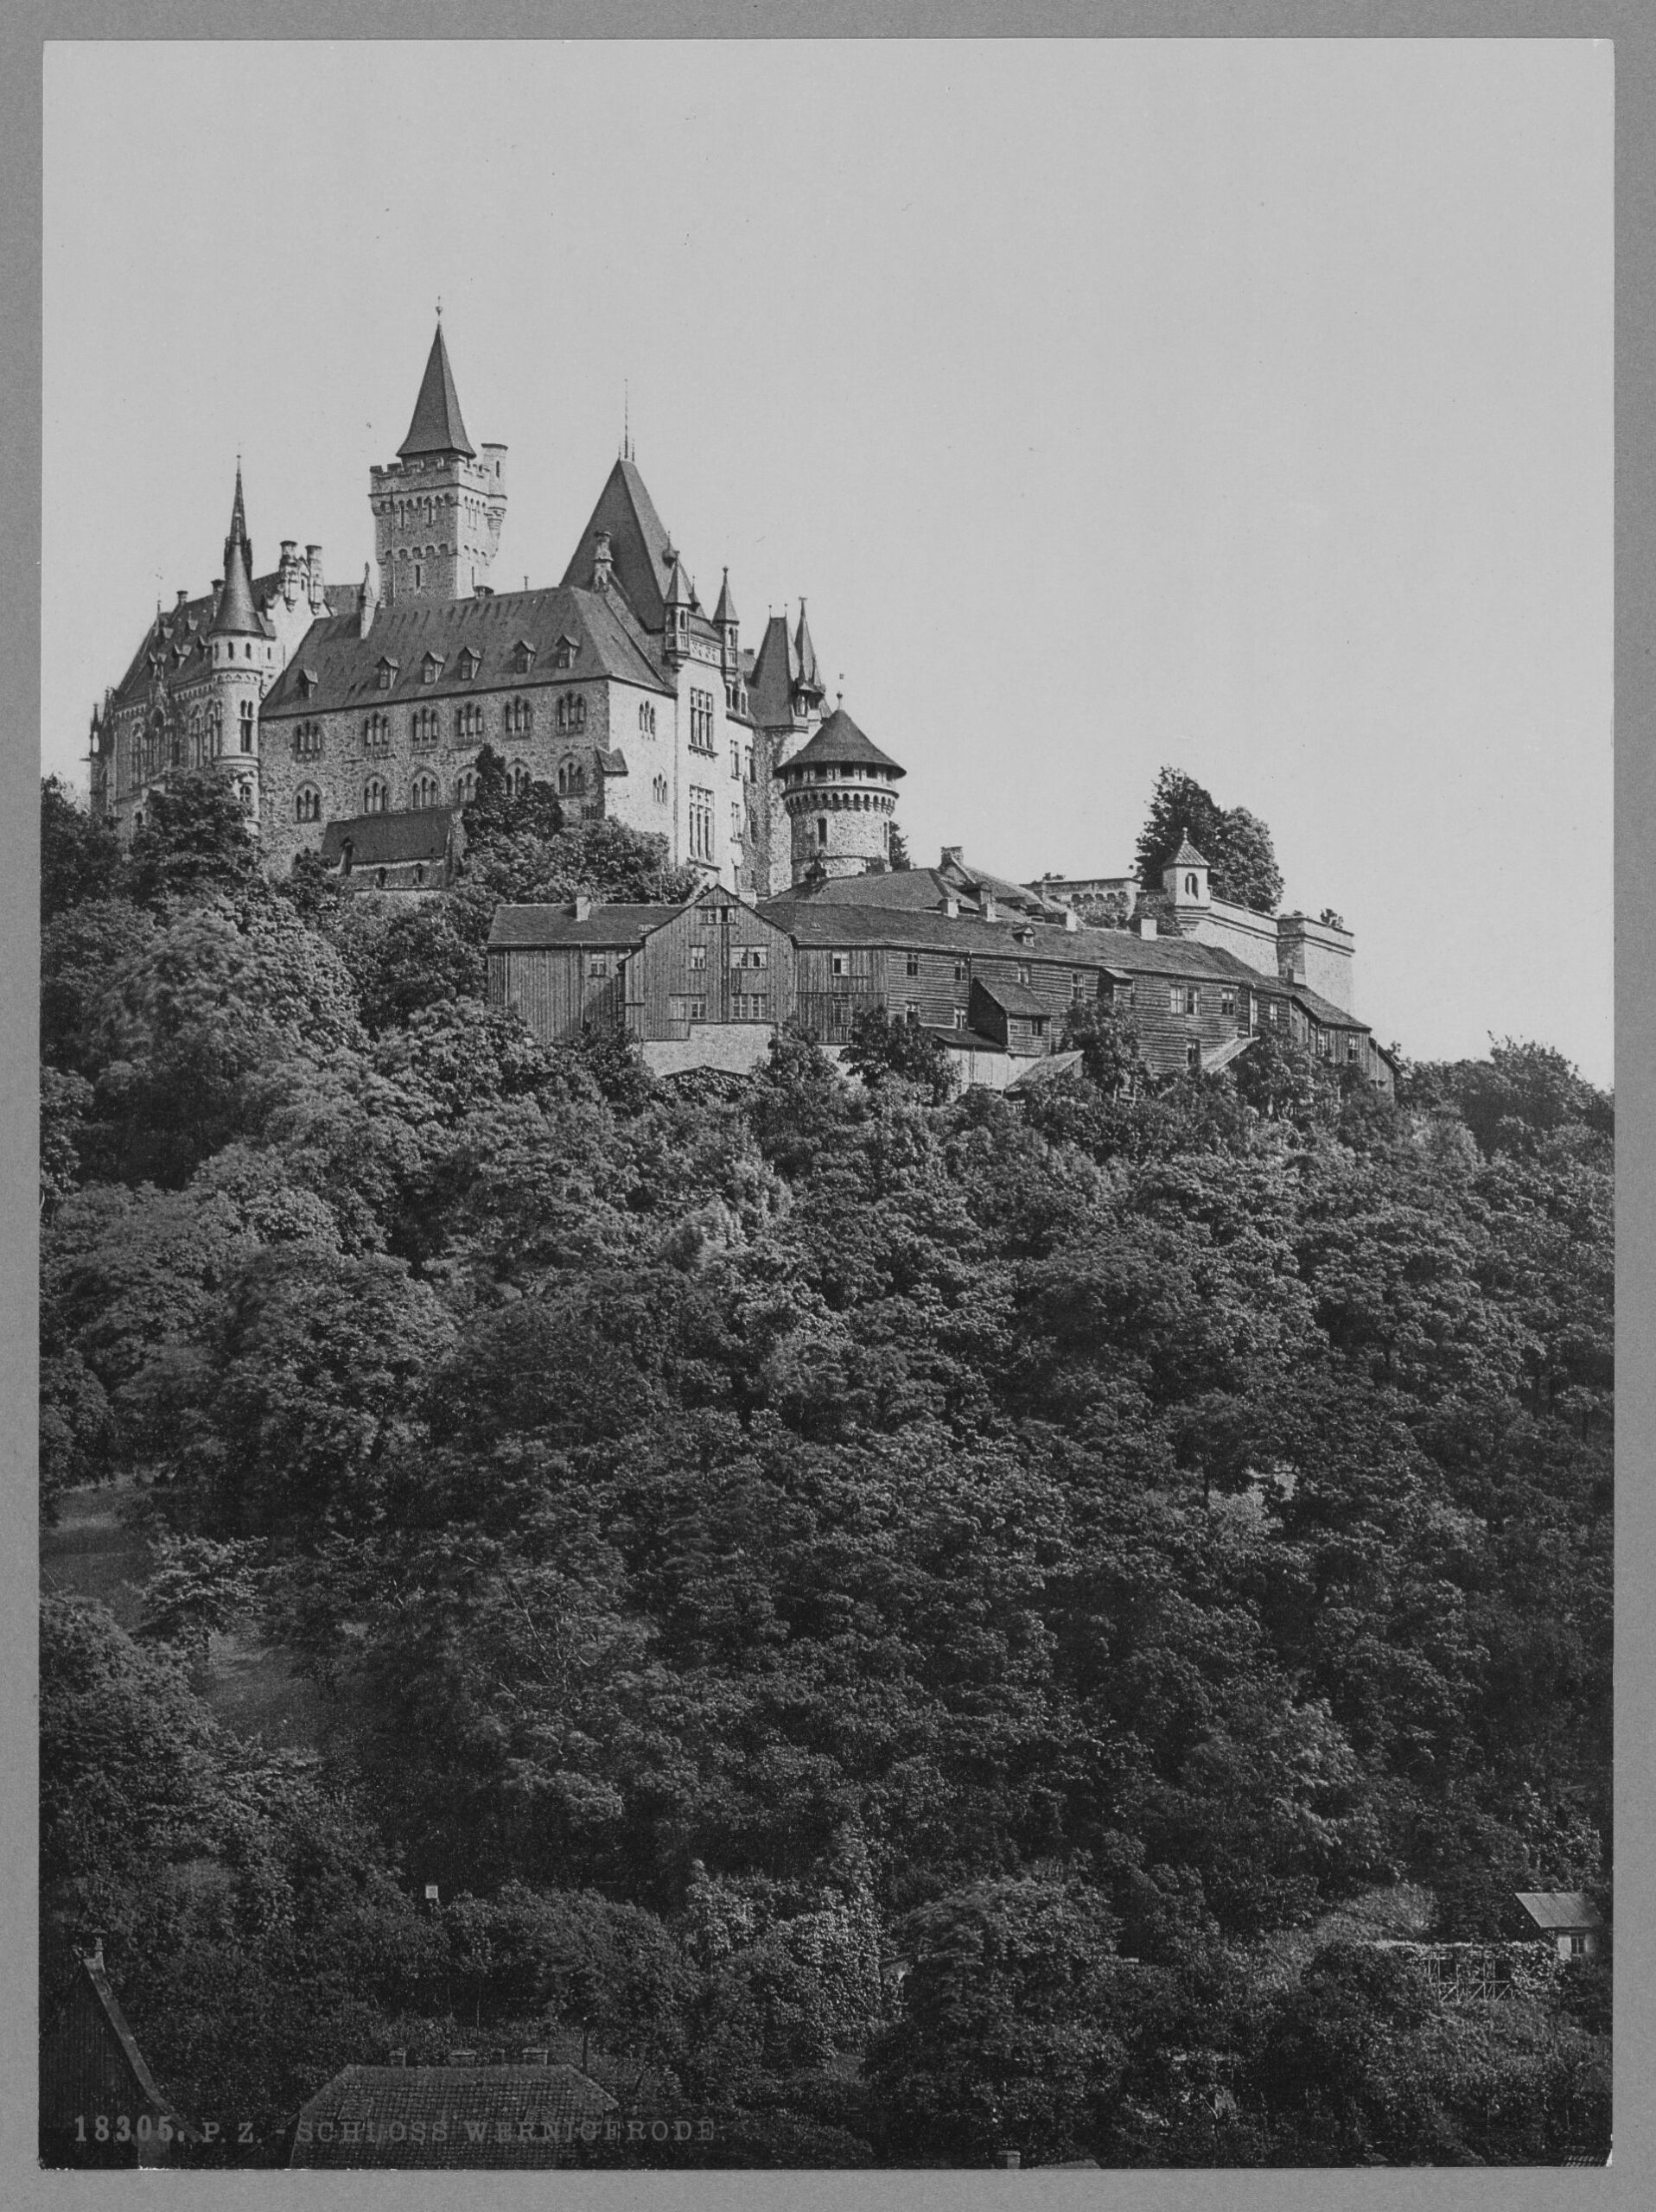 The castle, Wernigerode, Hartz, Germany